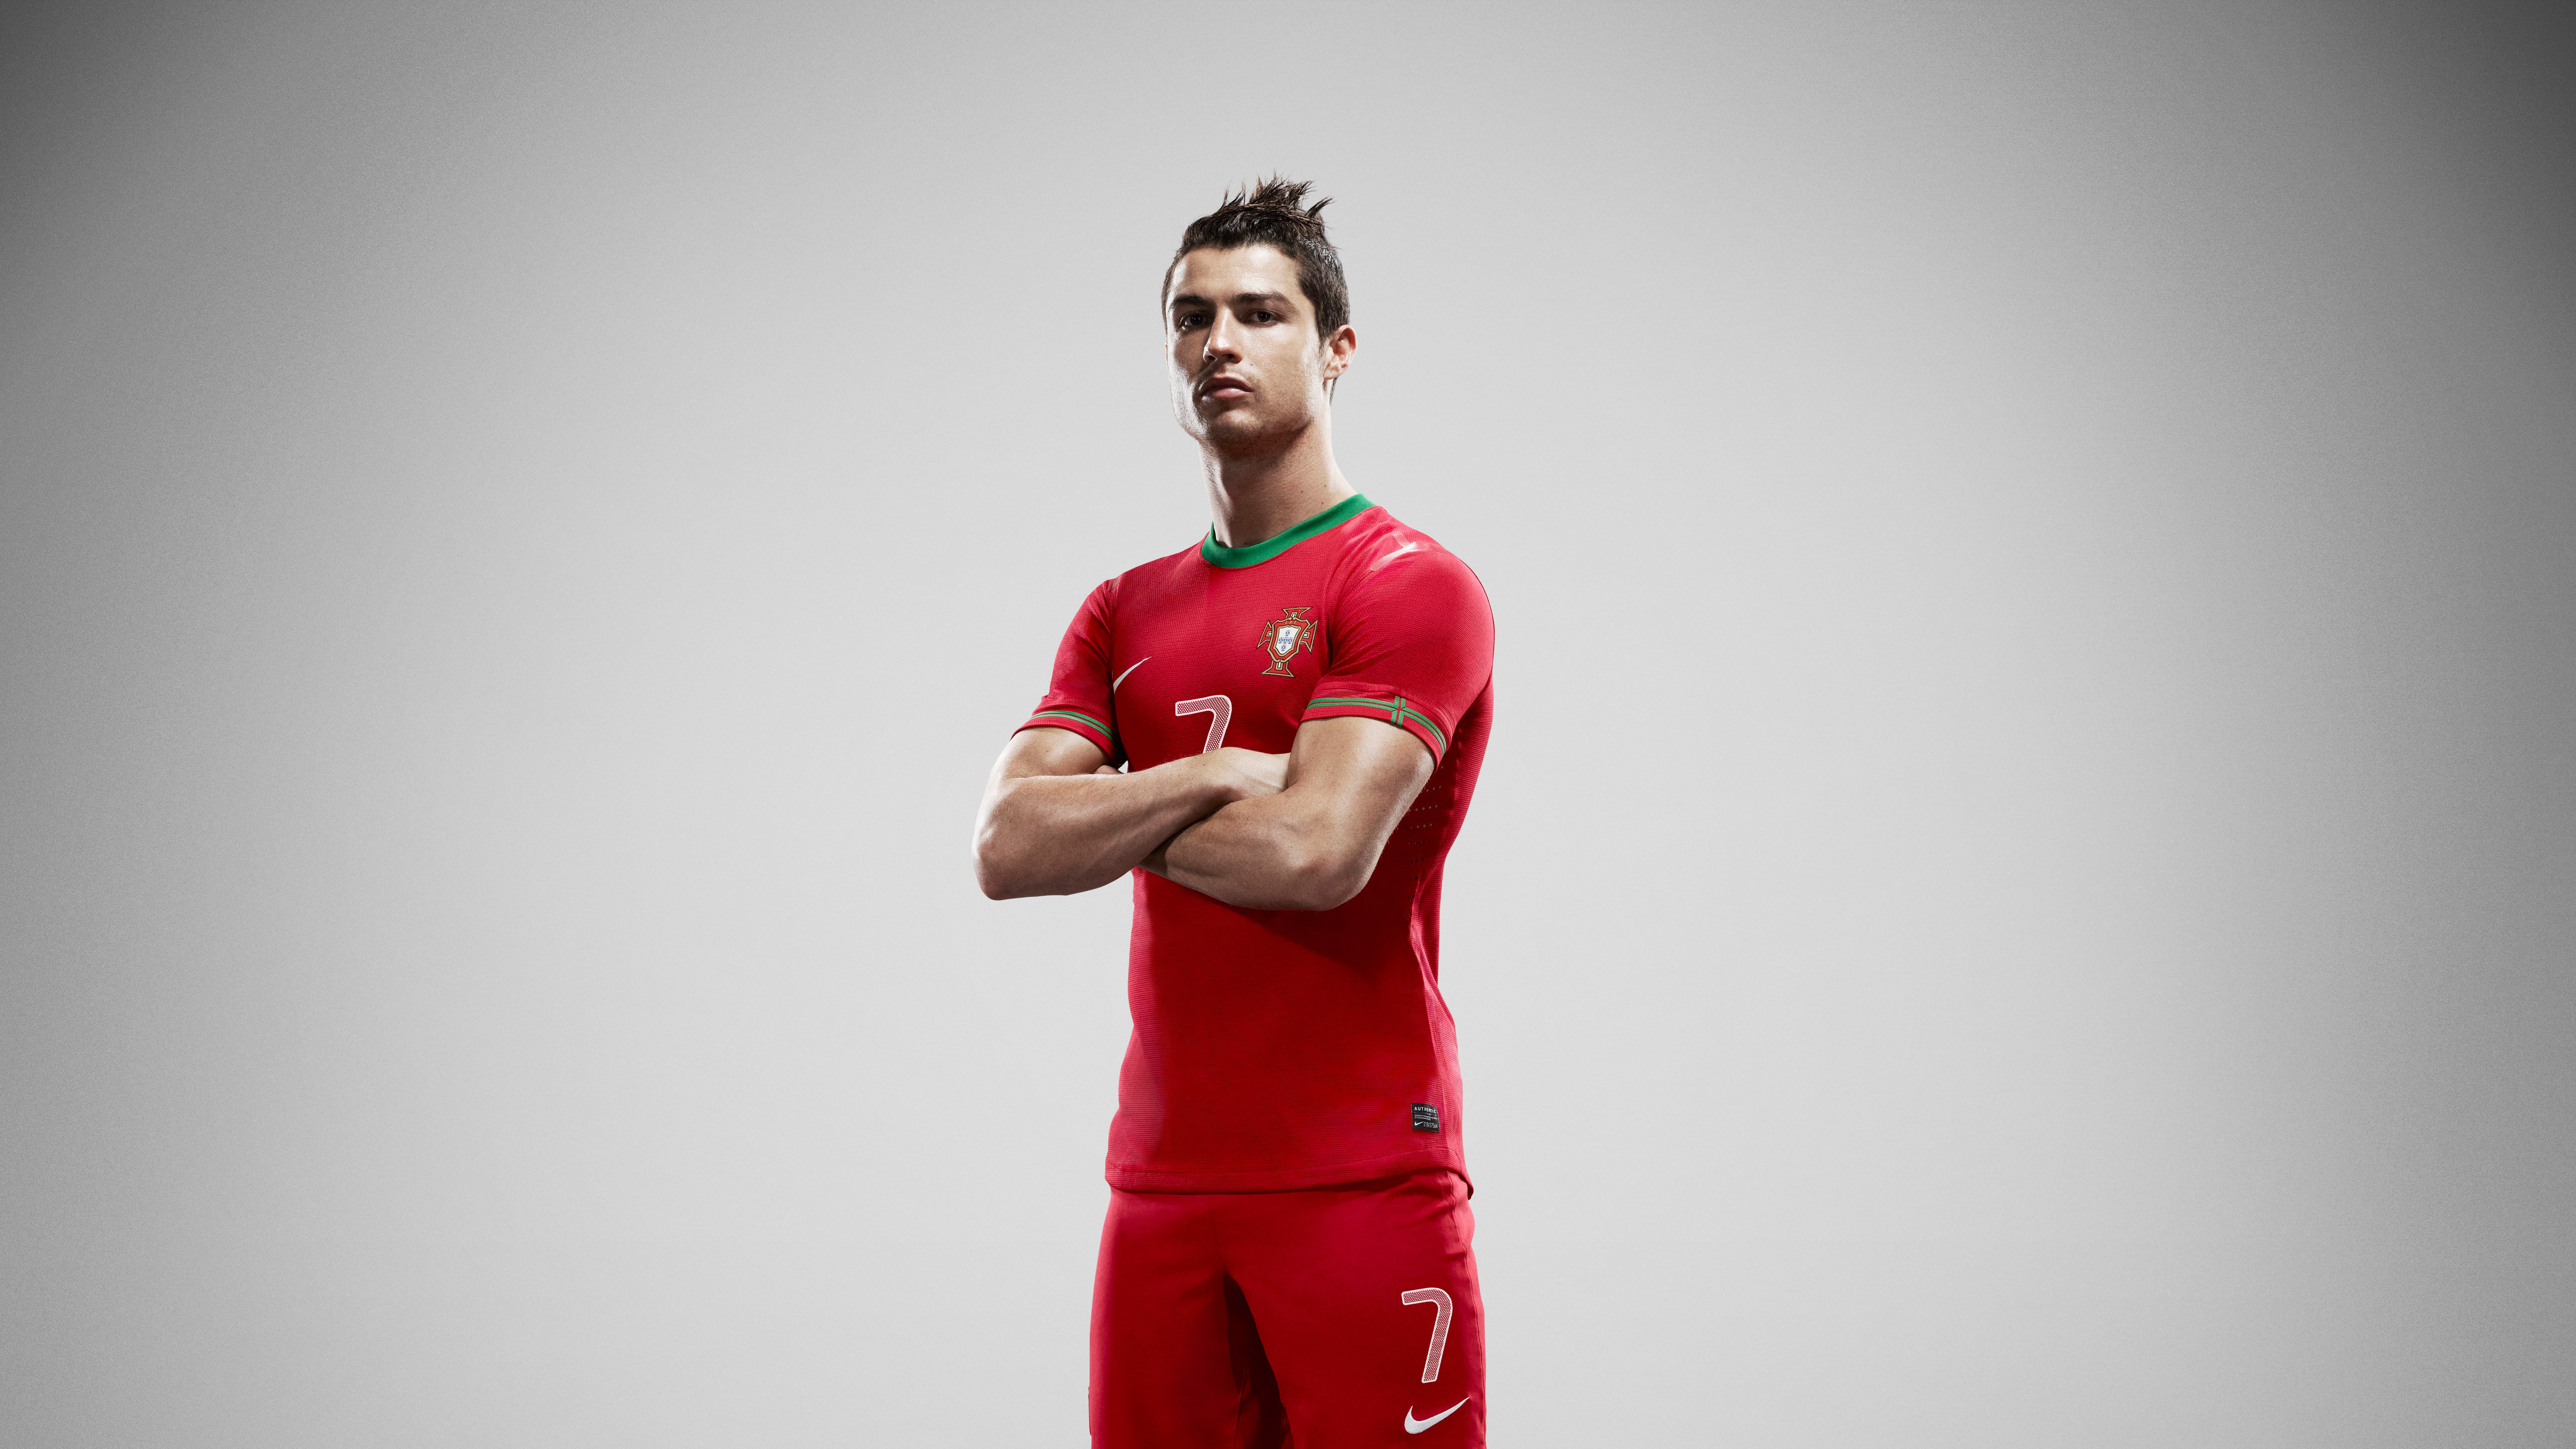 ronaldo wallpaper,sportswear,red,shoulder,standing,jersey